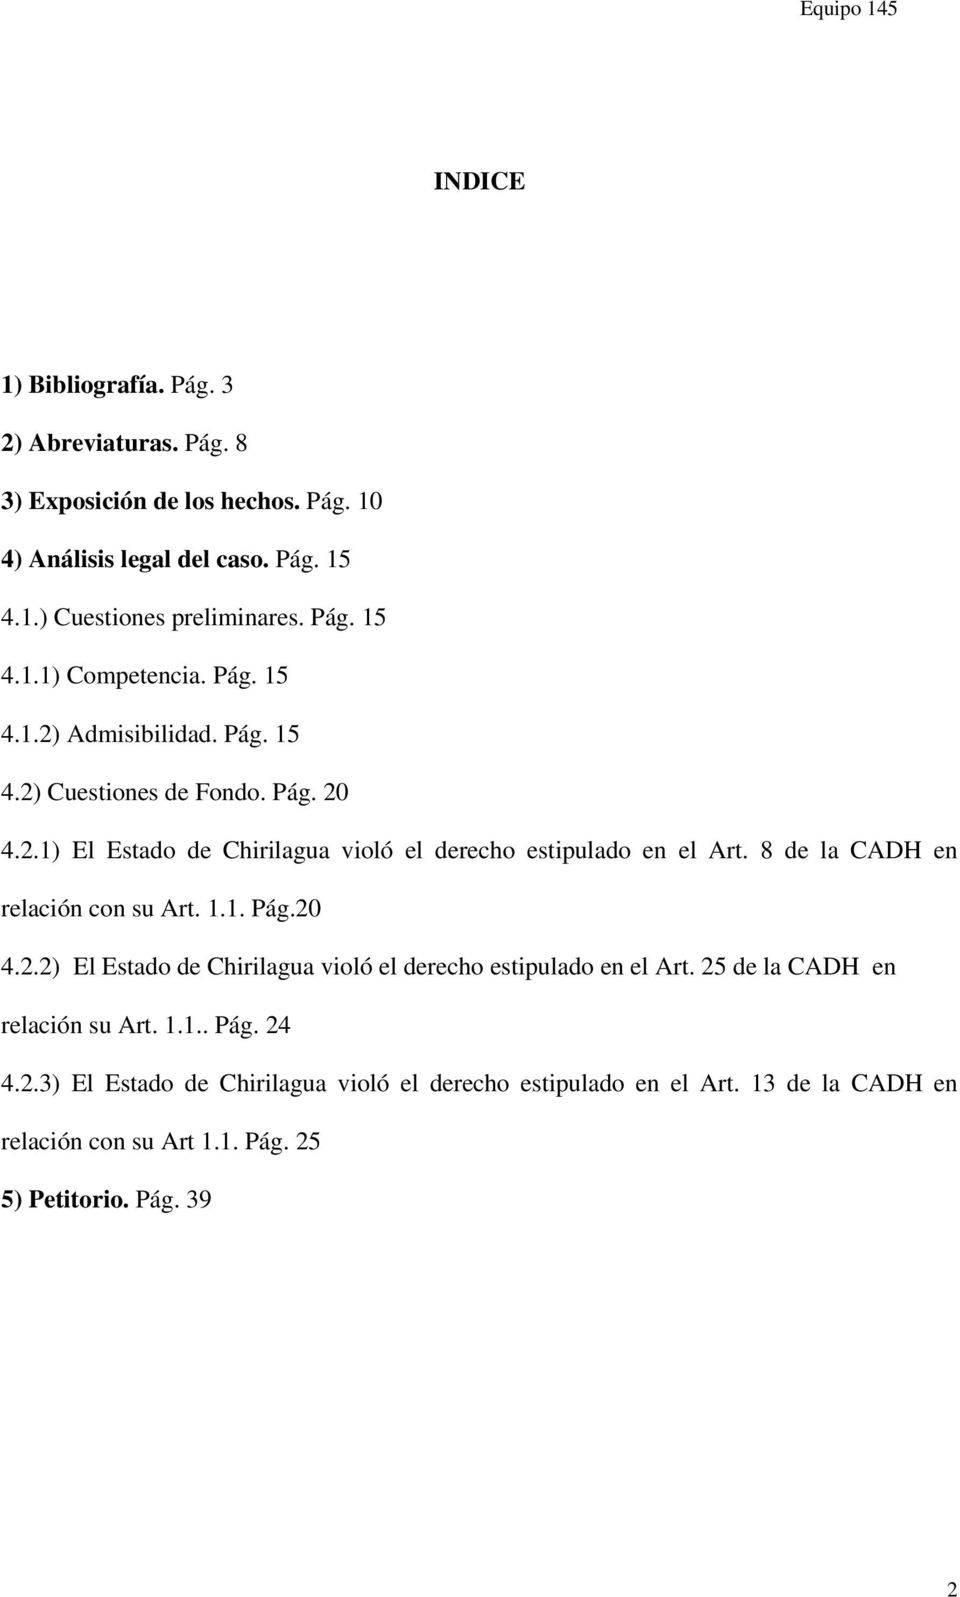 8 de la CADH en relación con su Art. 1.1. Pág.20 4.2.2) El Estado de Chirilagua violó el derecho estipulado en el Art. 25 de la CADH en relación su Art. 1.1.. Pág. 24 4.